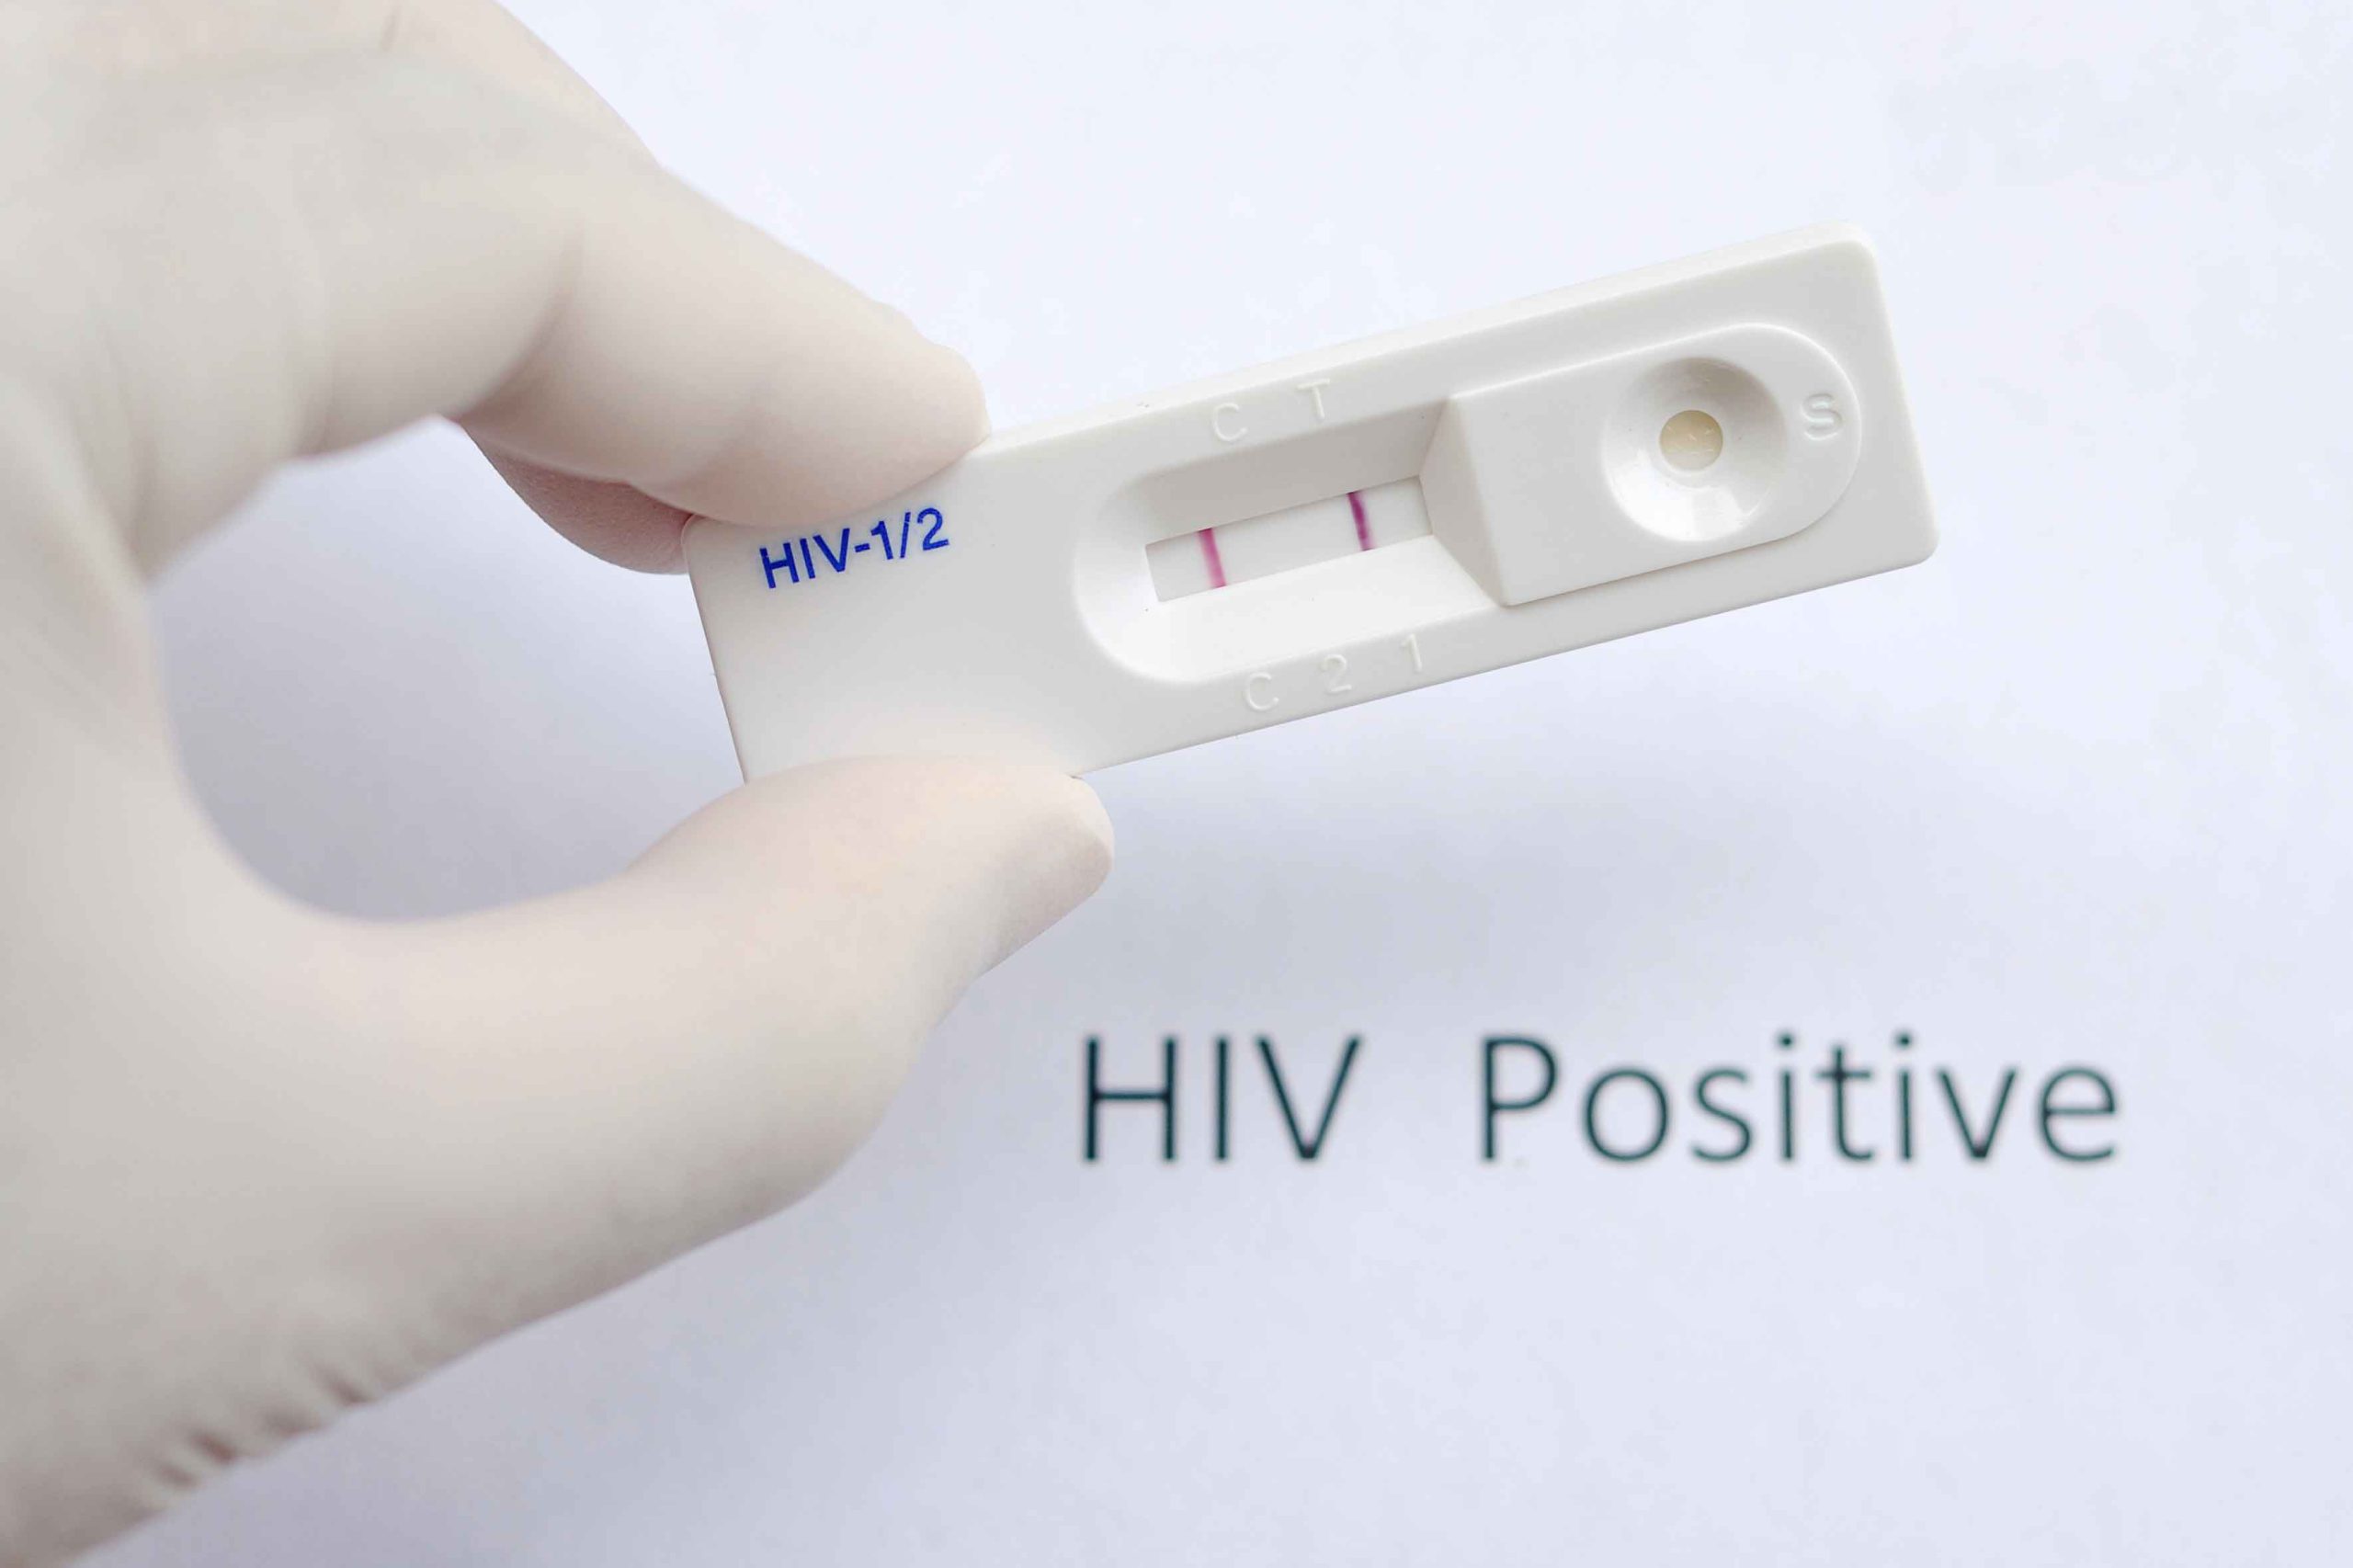 Γερμανία: Ατομικά «τεστ αυτοδιάγνωσης» του ιού HIV στα φαρμακεία για περιορισμό στη μετάδοσή του!